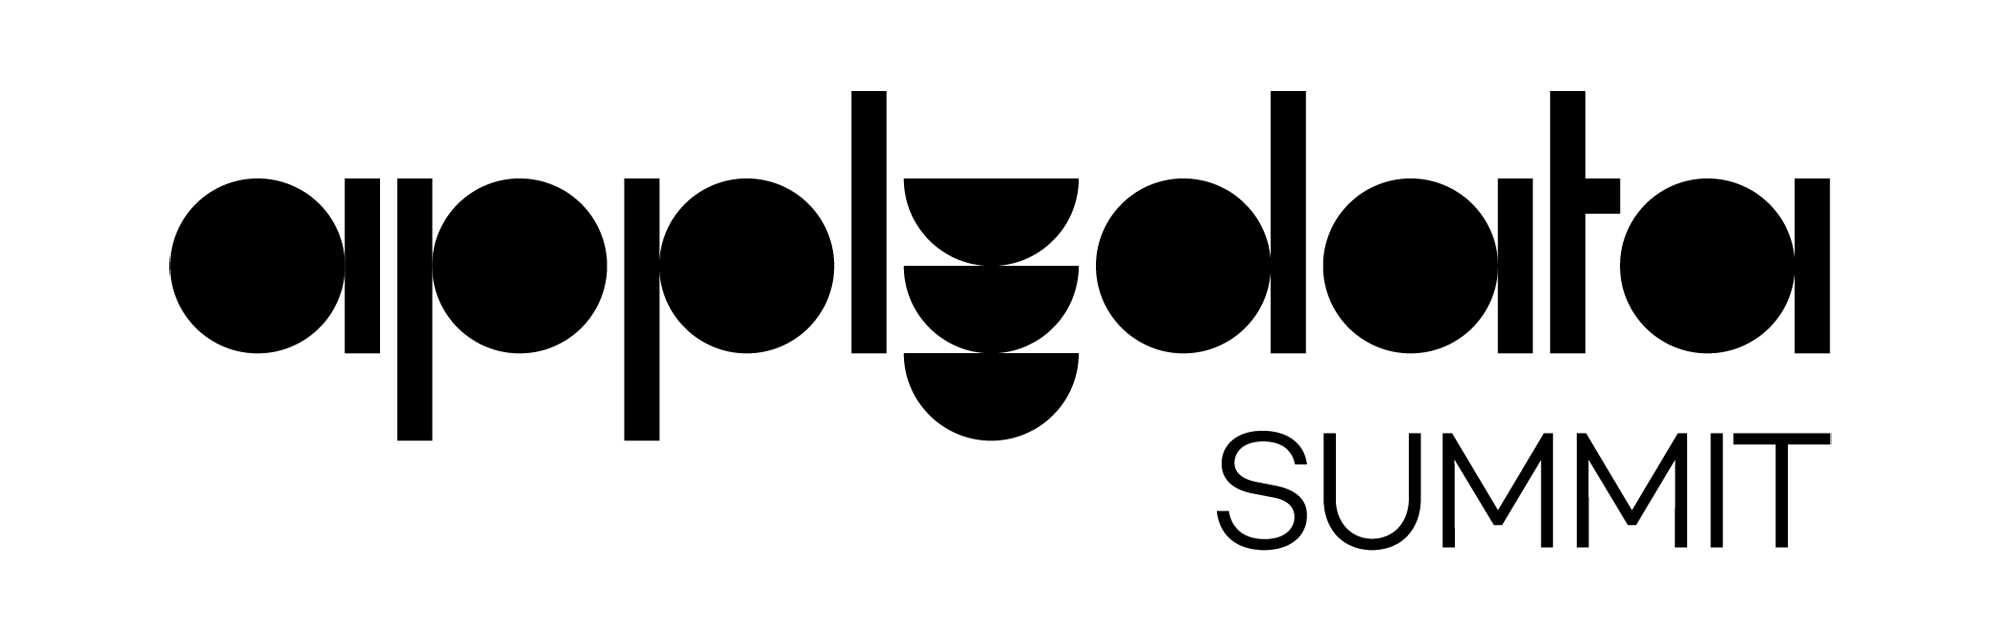 applydata summit Logo